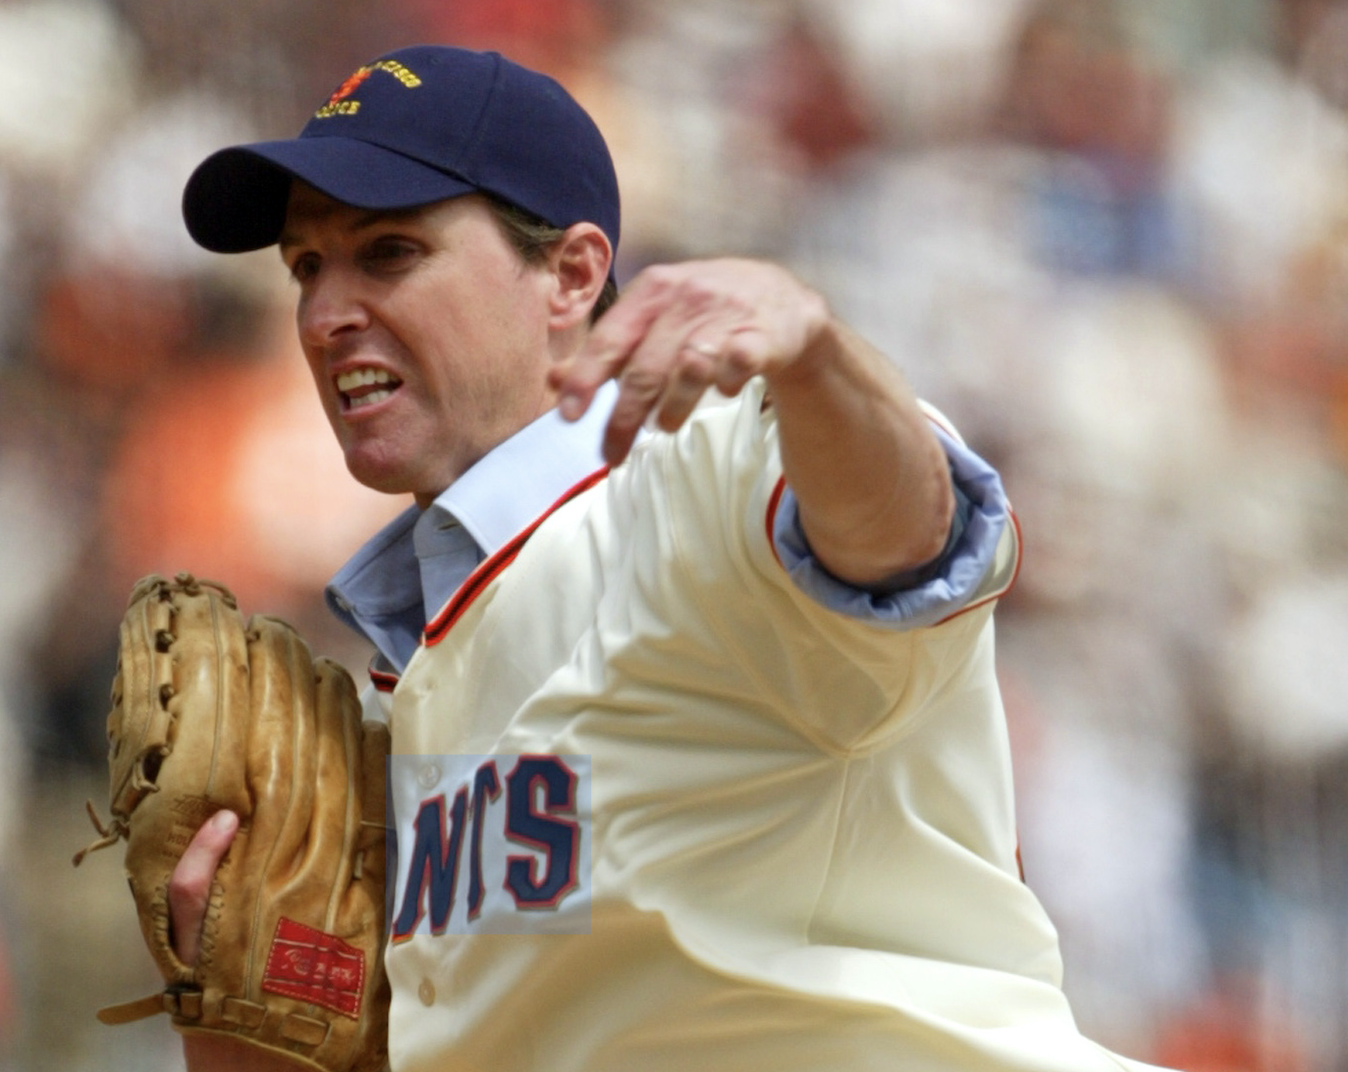 Gavin Newsom throwing a baseball